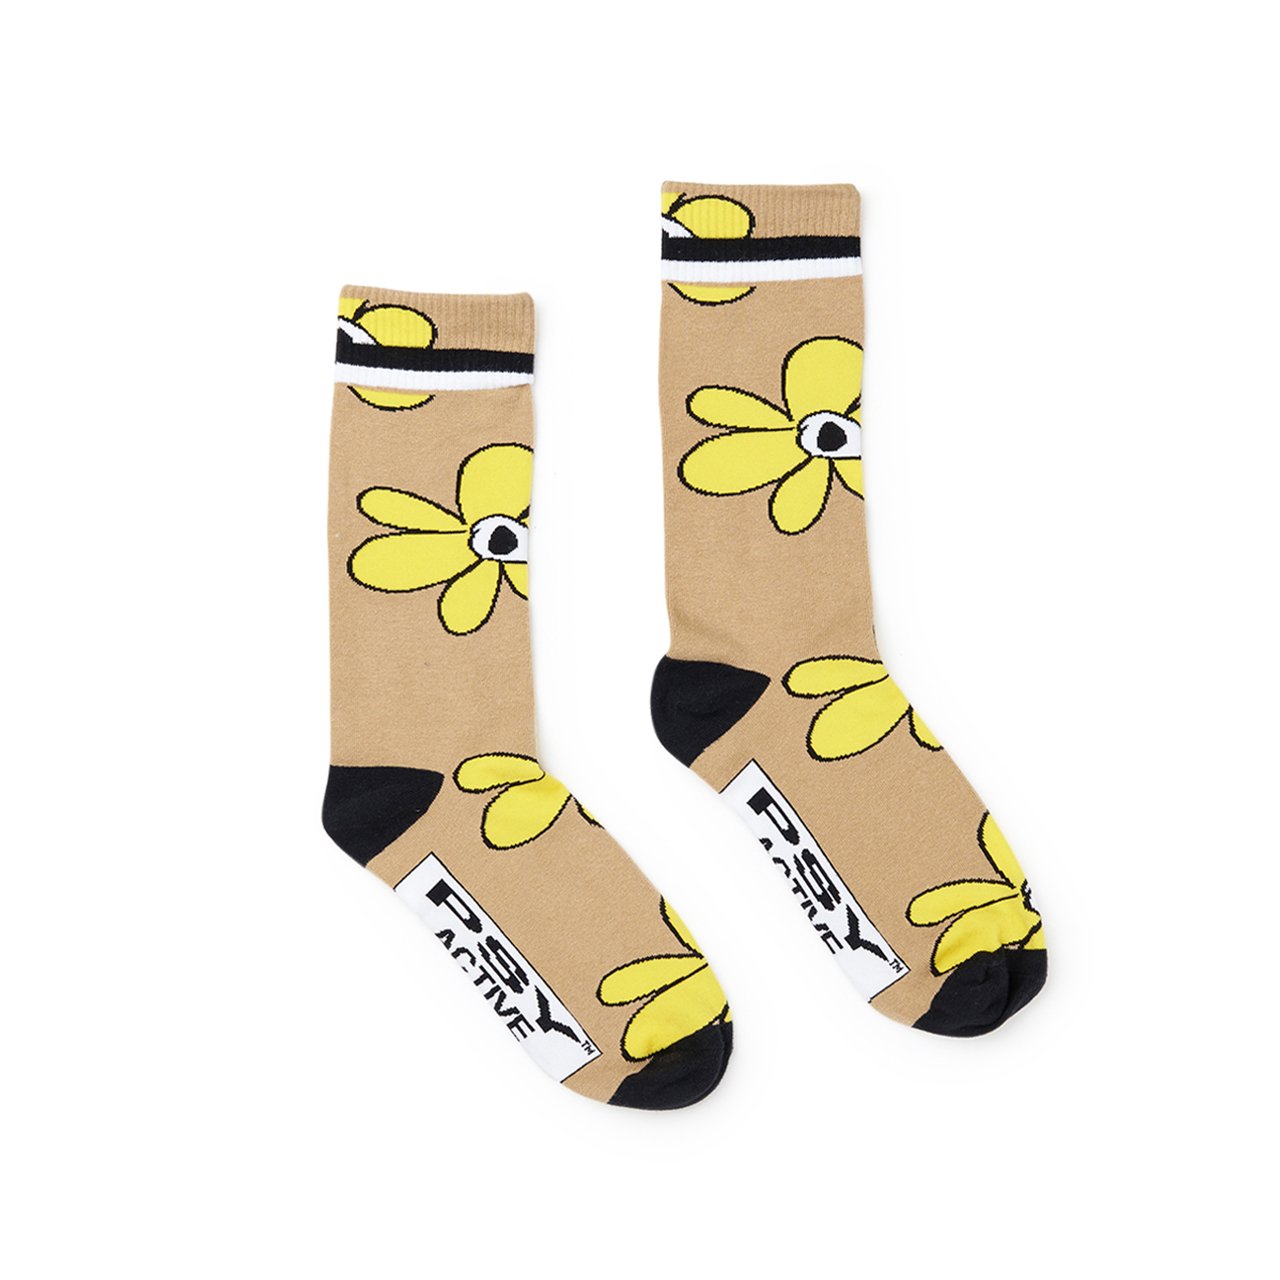 perks and mini flower dress socks (multi) - 9731-mlt - a.plus - Image - 1